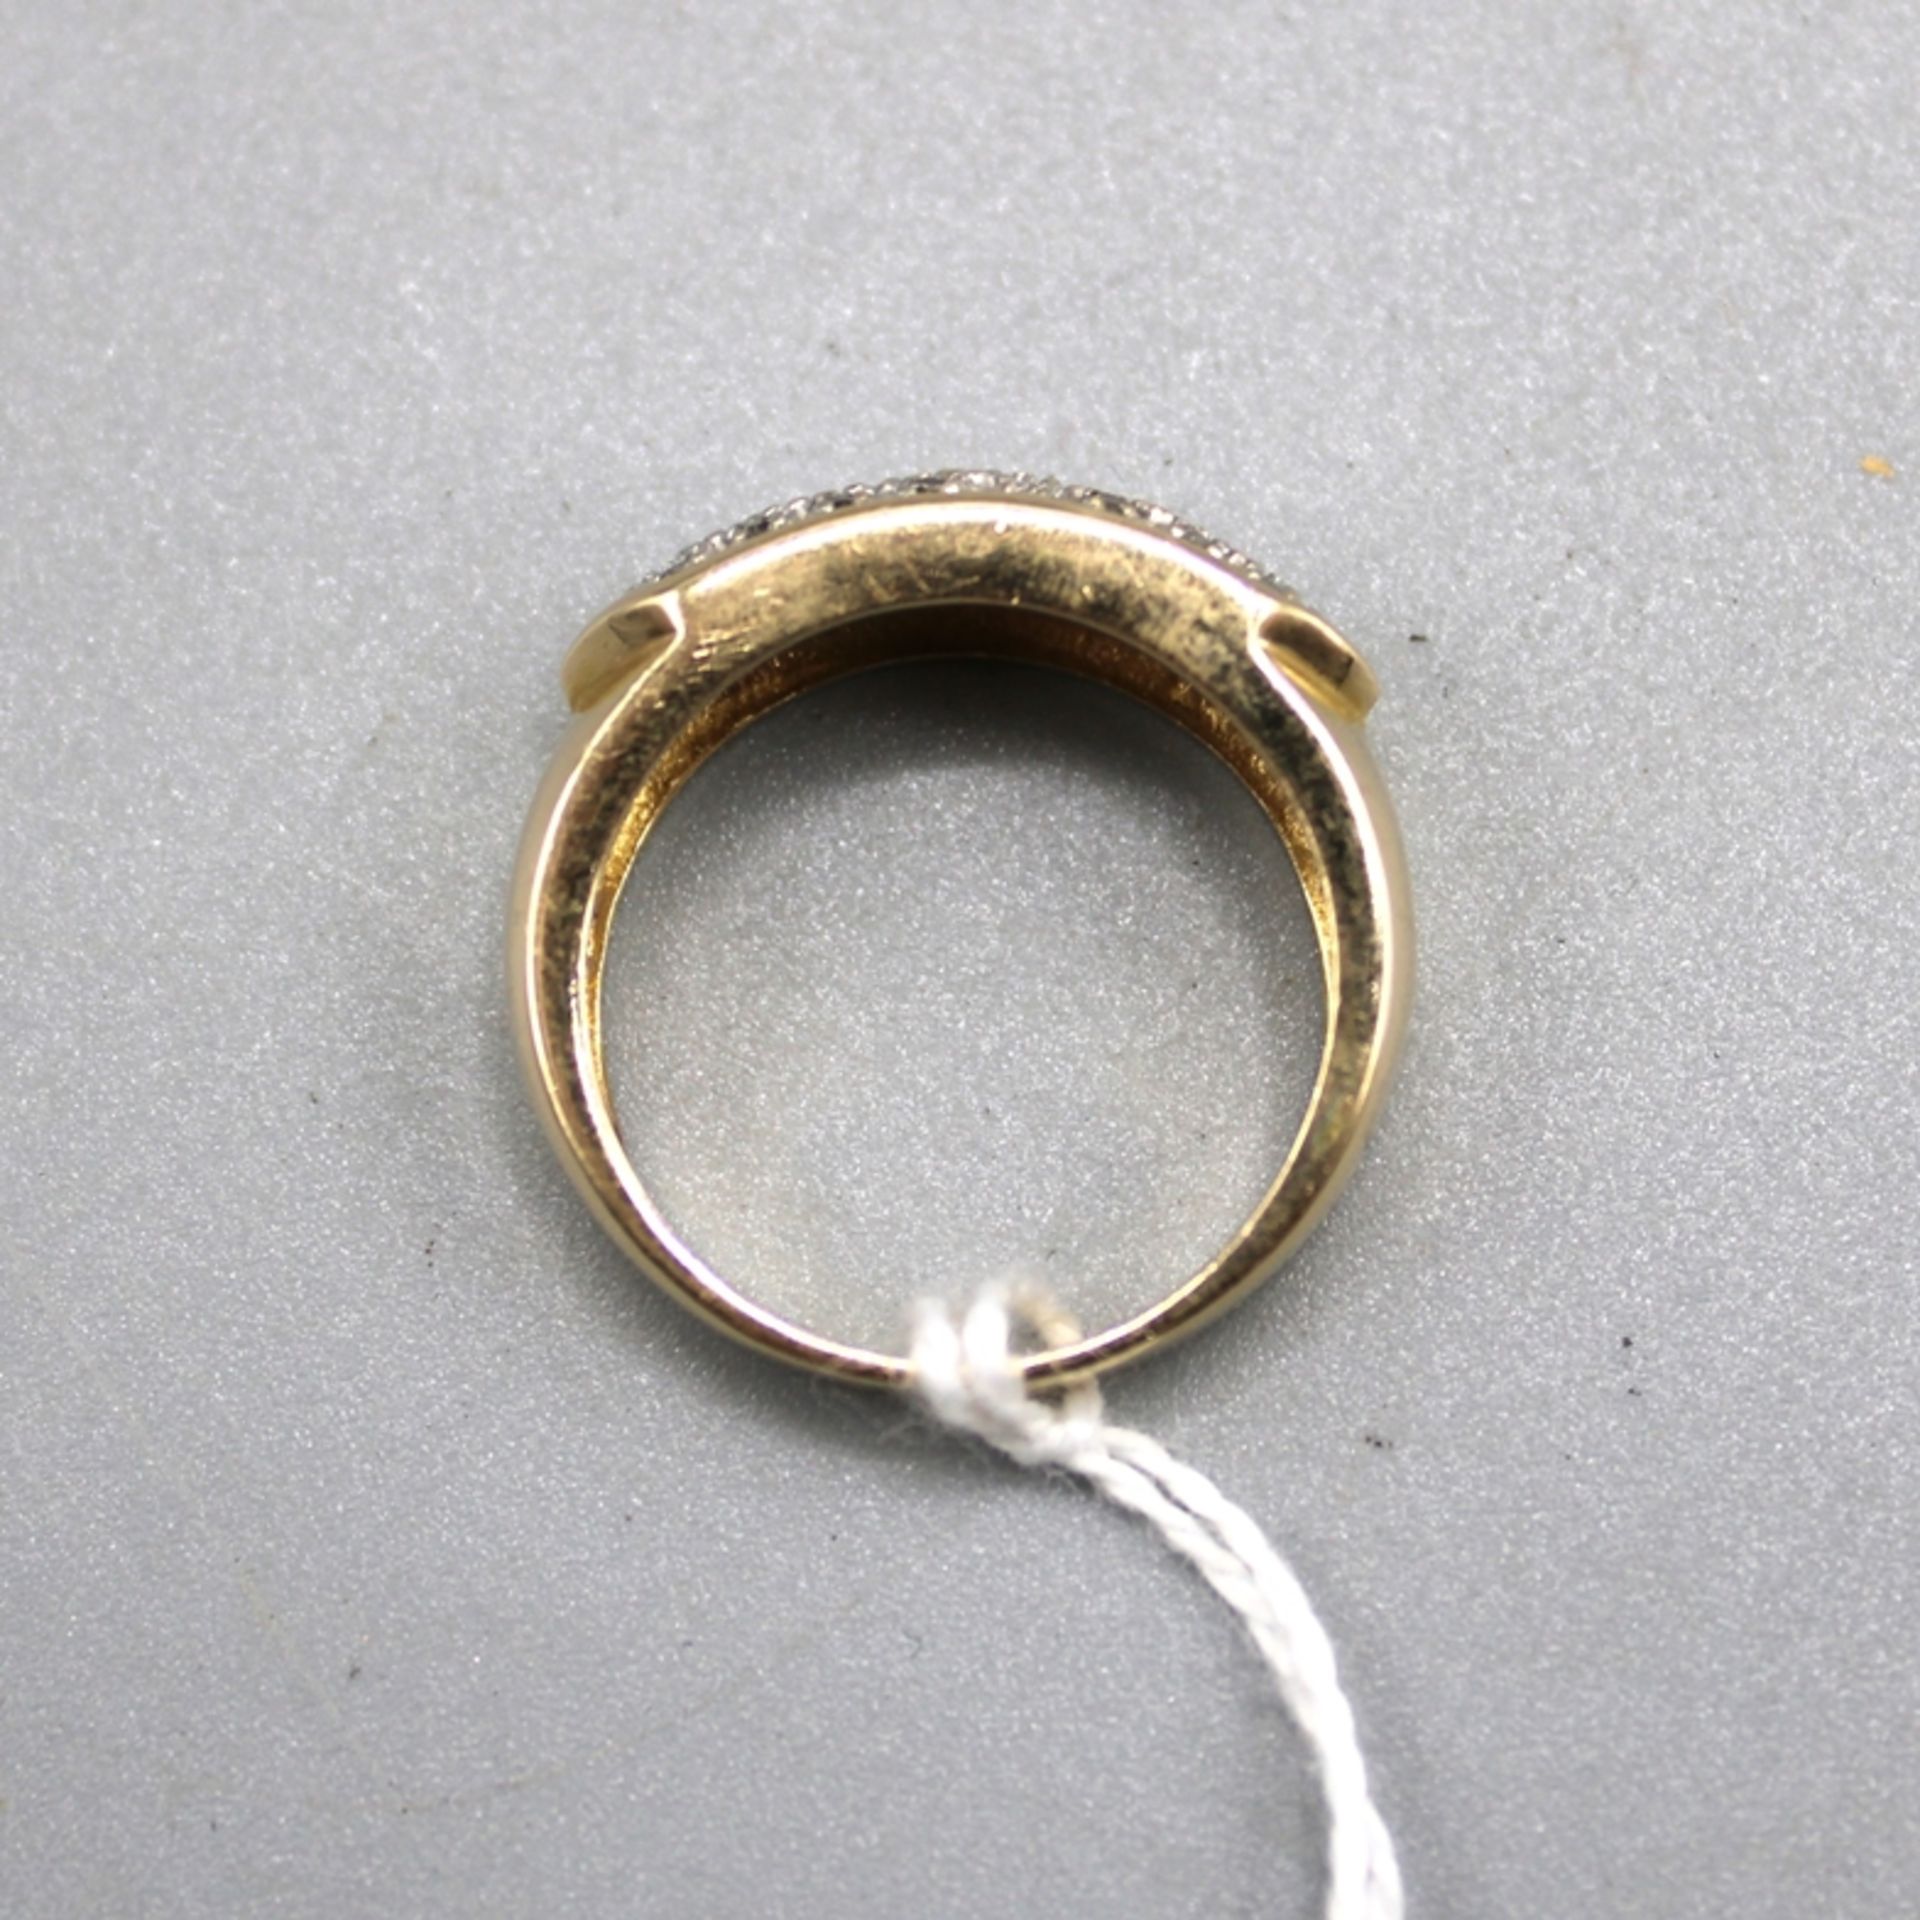 Diamantring 585 Gold, m. vielen kleinen Diamanten besetzt, Ring Ø ca. 17 mm, 5,4 g - Bild 2 aus 2